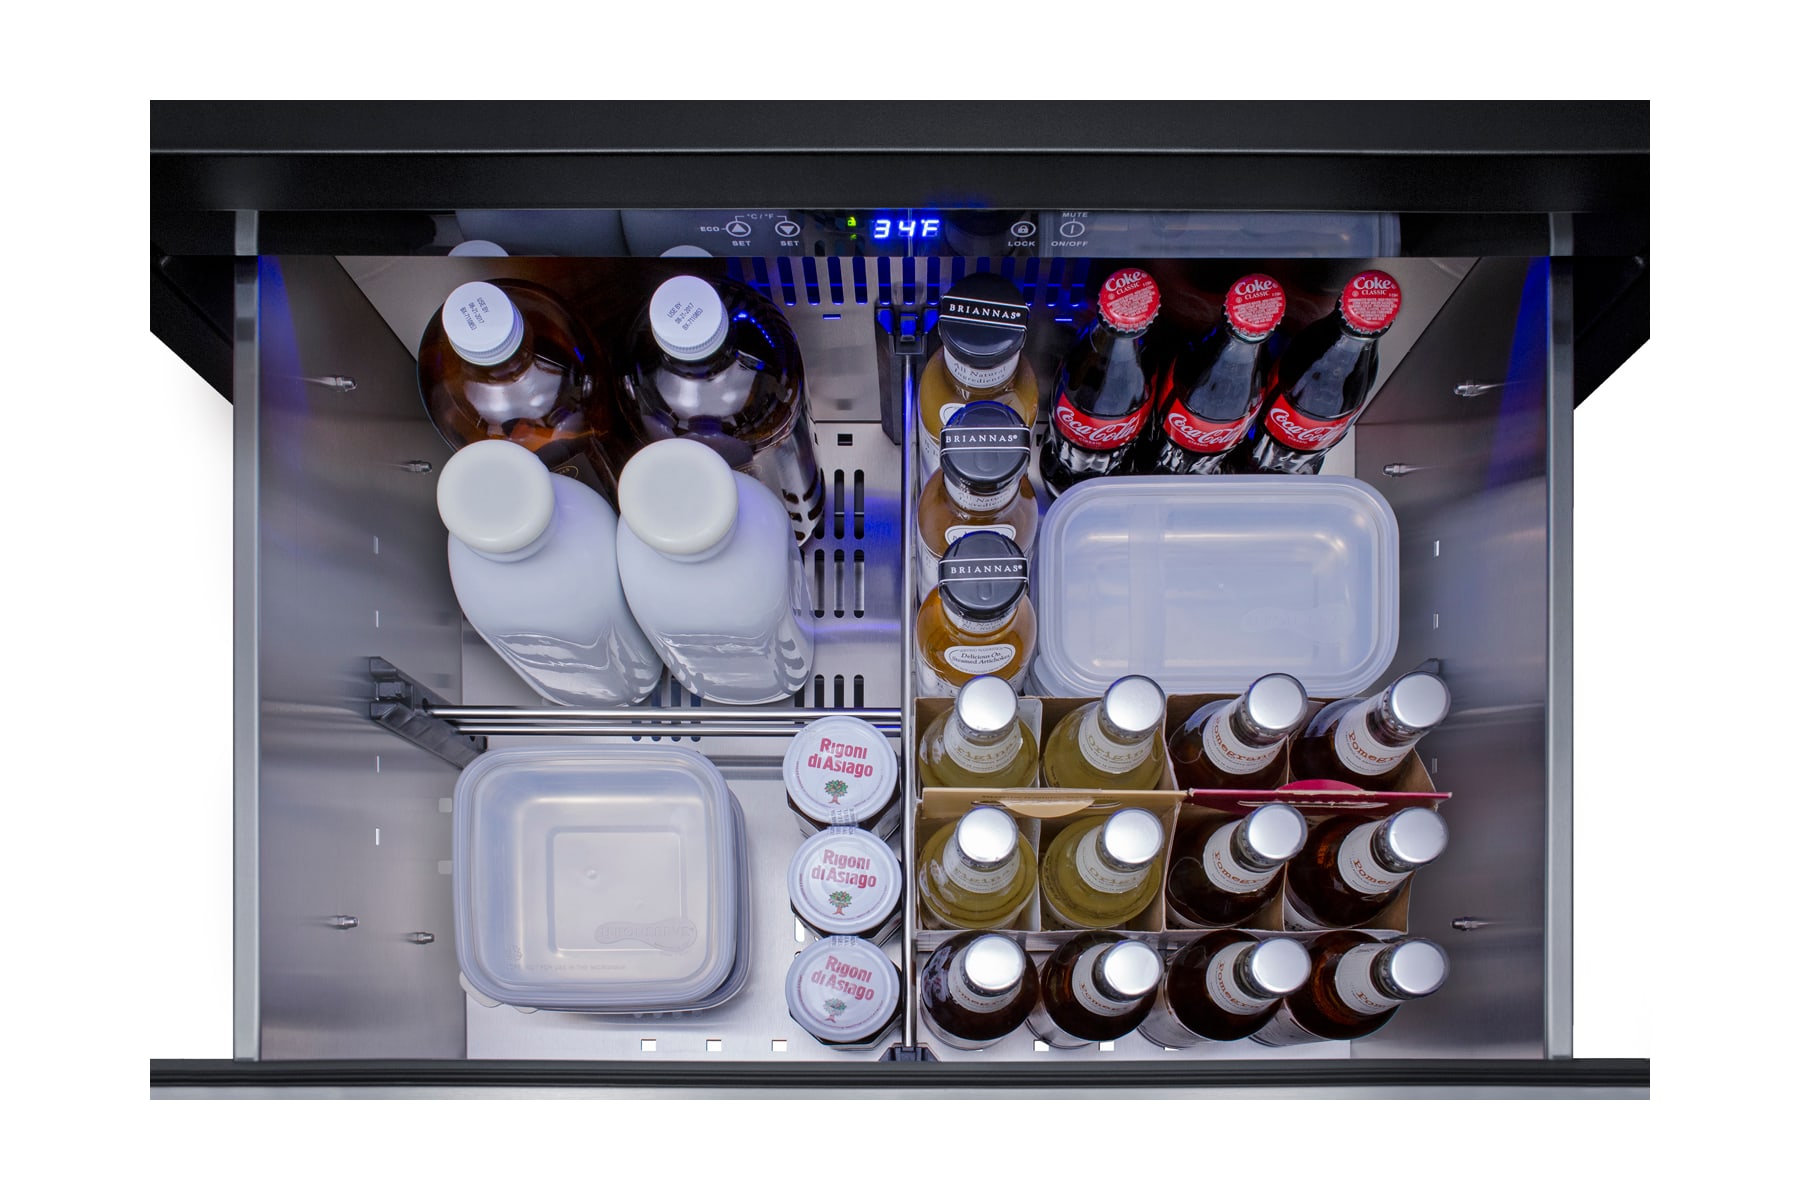 Summit 27 All-refrigerator 2-Drawer ADA Compliant - SPR275OS2DPNRADA